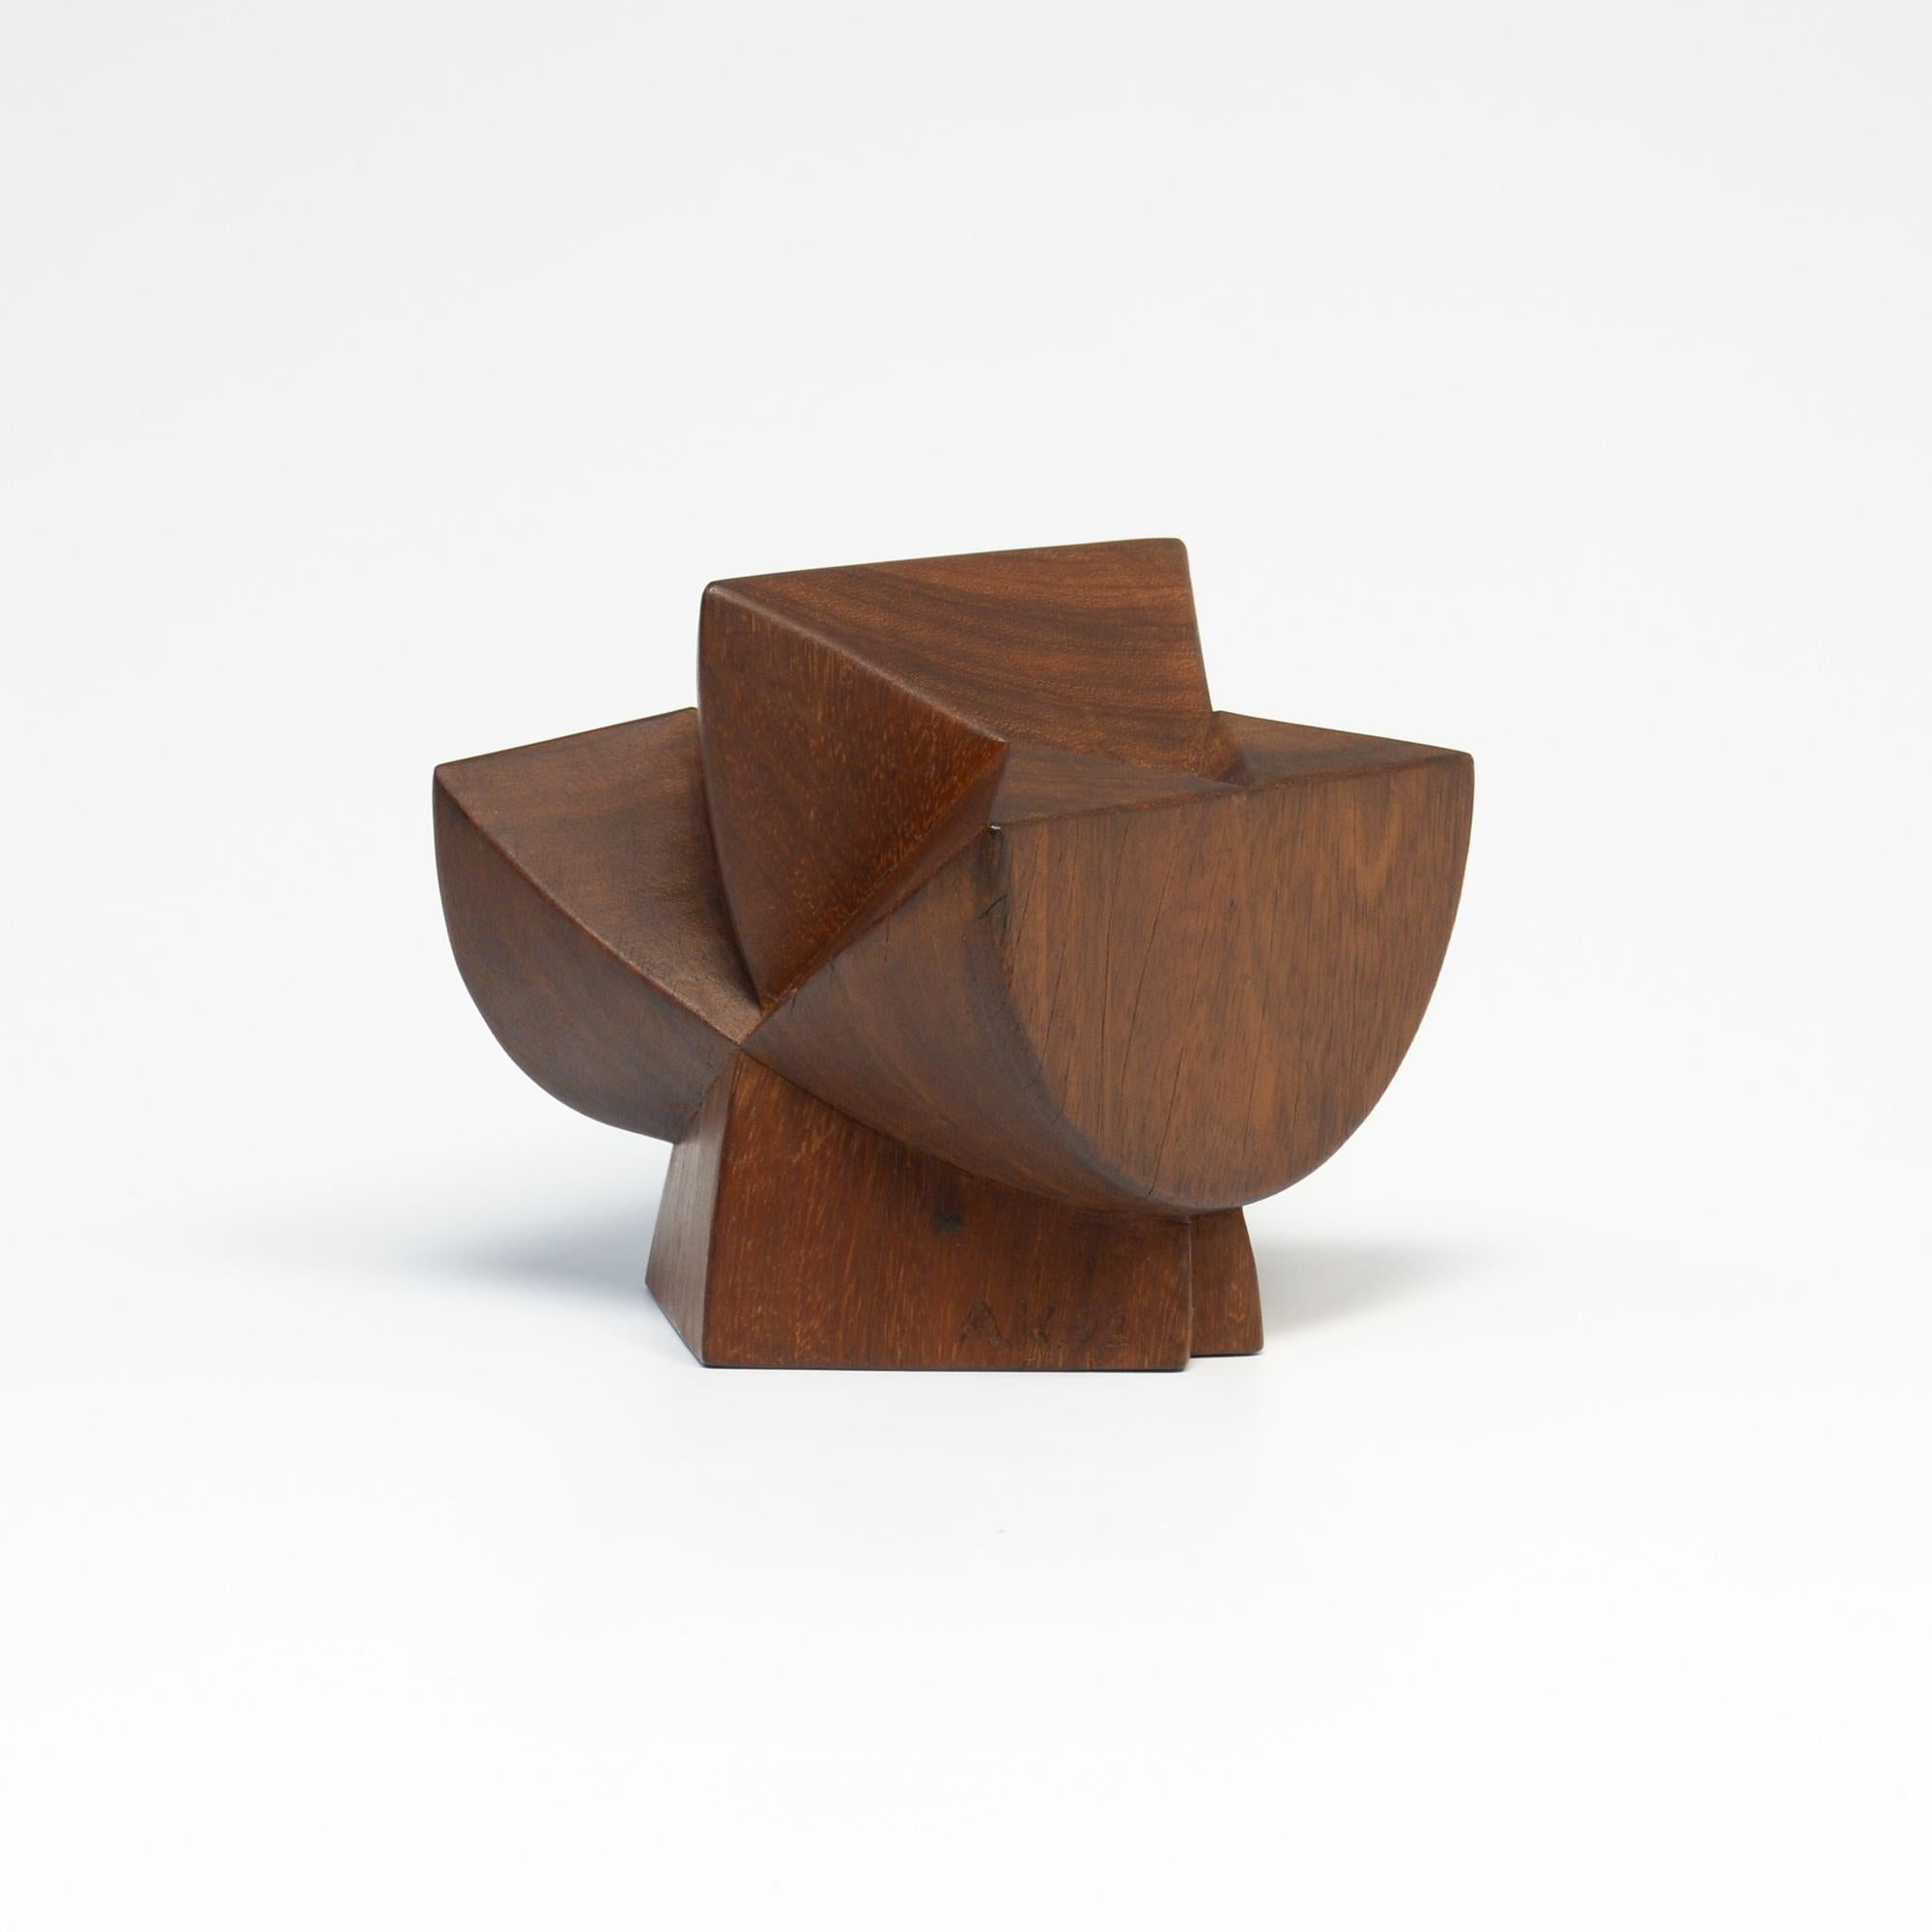 Modern Abstract Wooden Sculpture